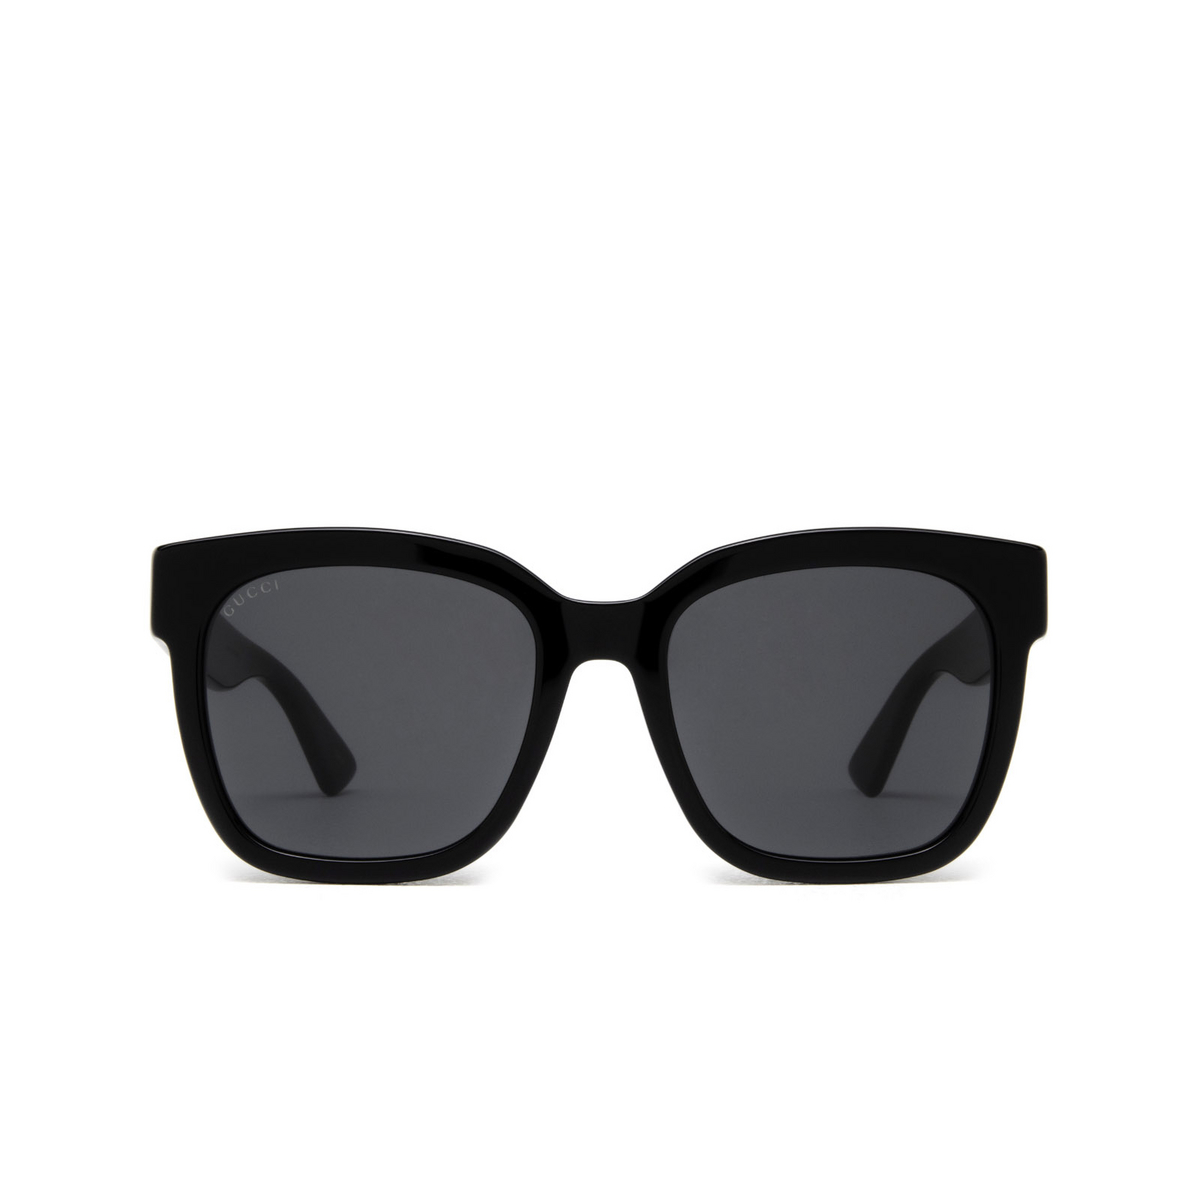 Gucci® Square Sunglasses: GG0034SN color Black 001 - front view.